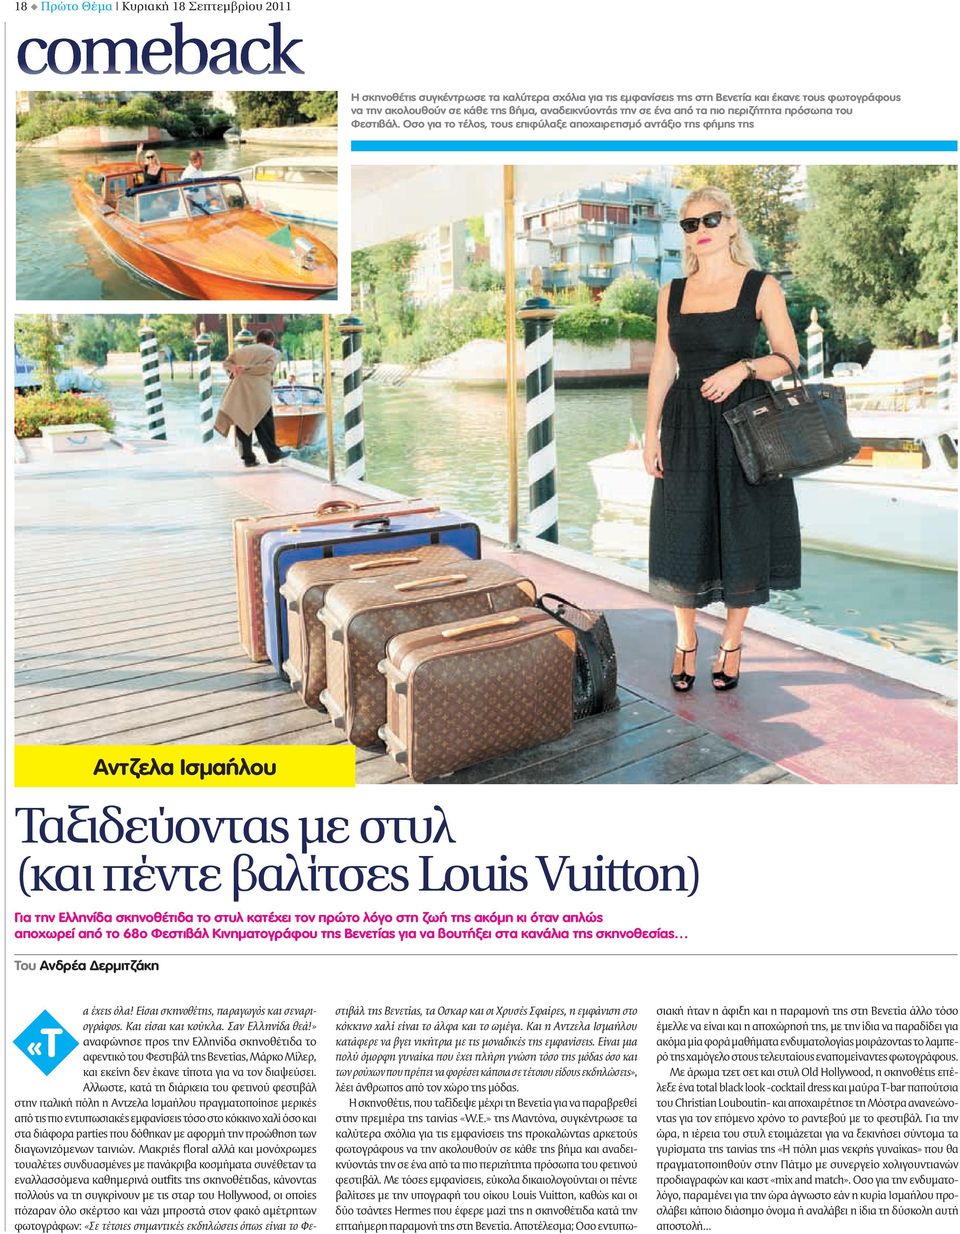 Οσο για το τέλος, τους επιφύλαξε αποχαιρετισμό αντάξιο της φήμης της Αντζελα Ισμαήλου Ταξιδεύοντας με στυλ (και πέντε βαλίτσες Louis Vuitton) Για την Ελληνίδα σκηνοθέτιδα το στυλ κατέχει τον πρώτο